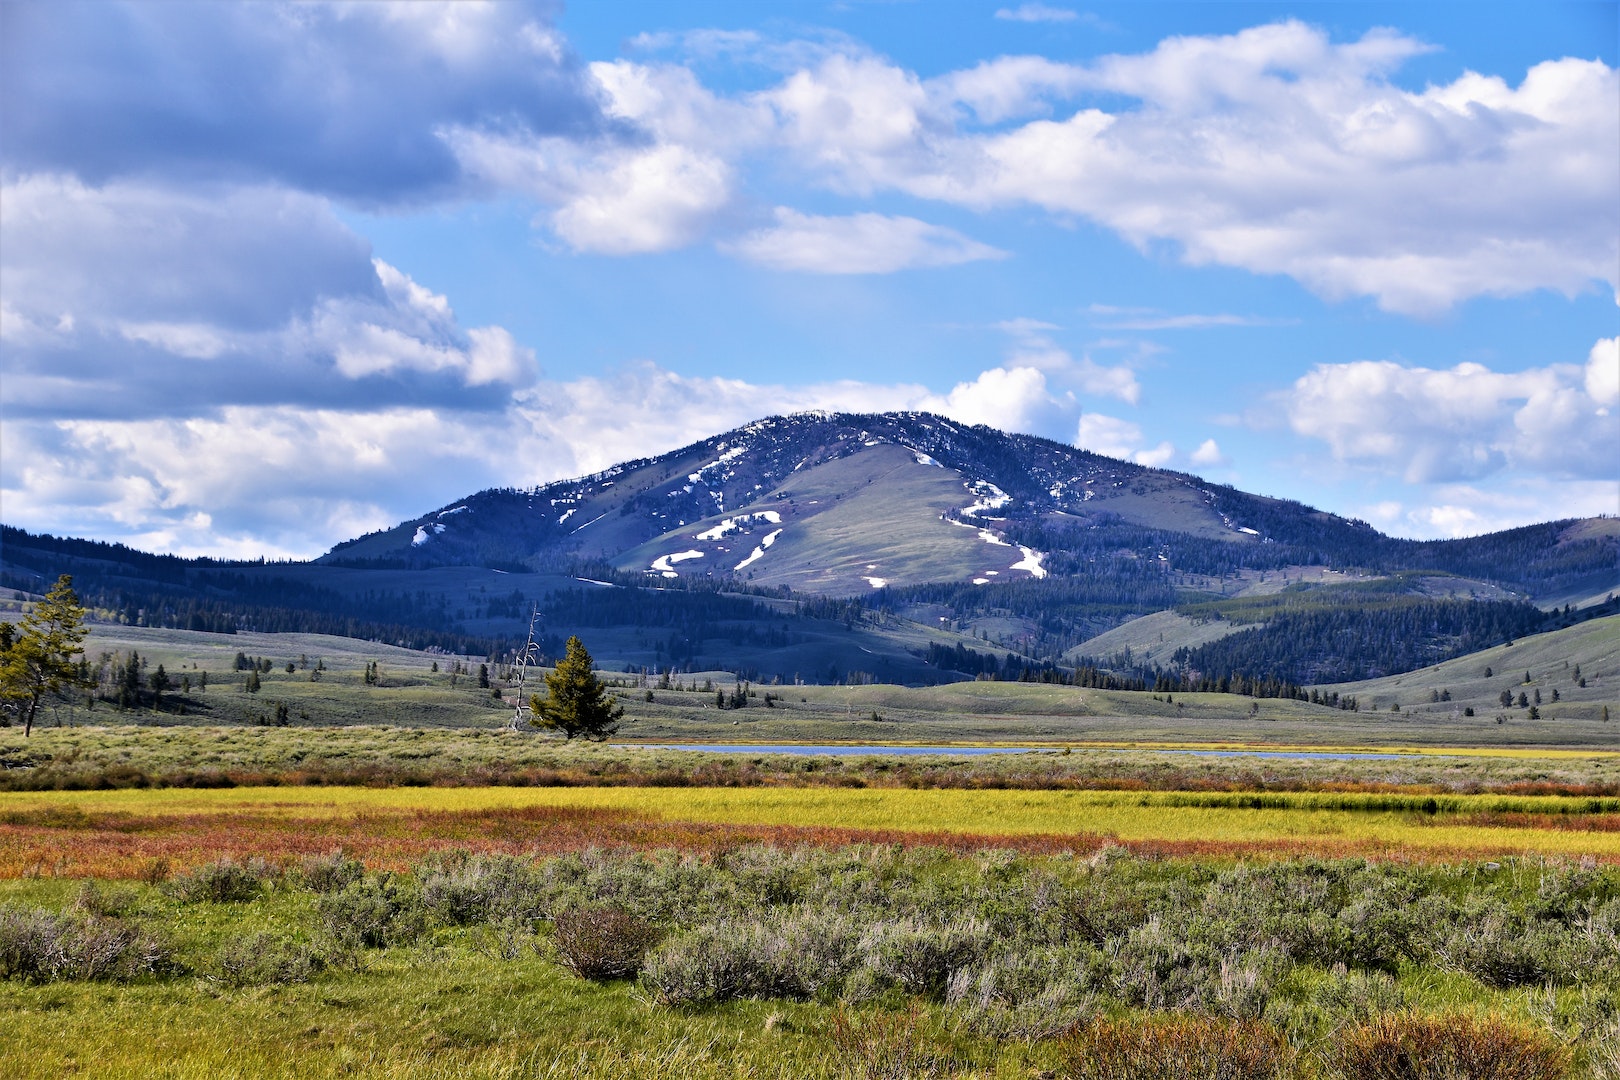 Les parcs nationaux américains comme Yellowstone sont des endroits formidables pour randonner seul ou en famille